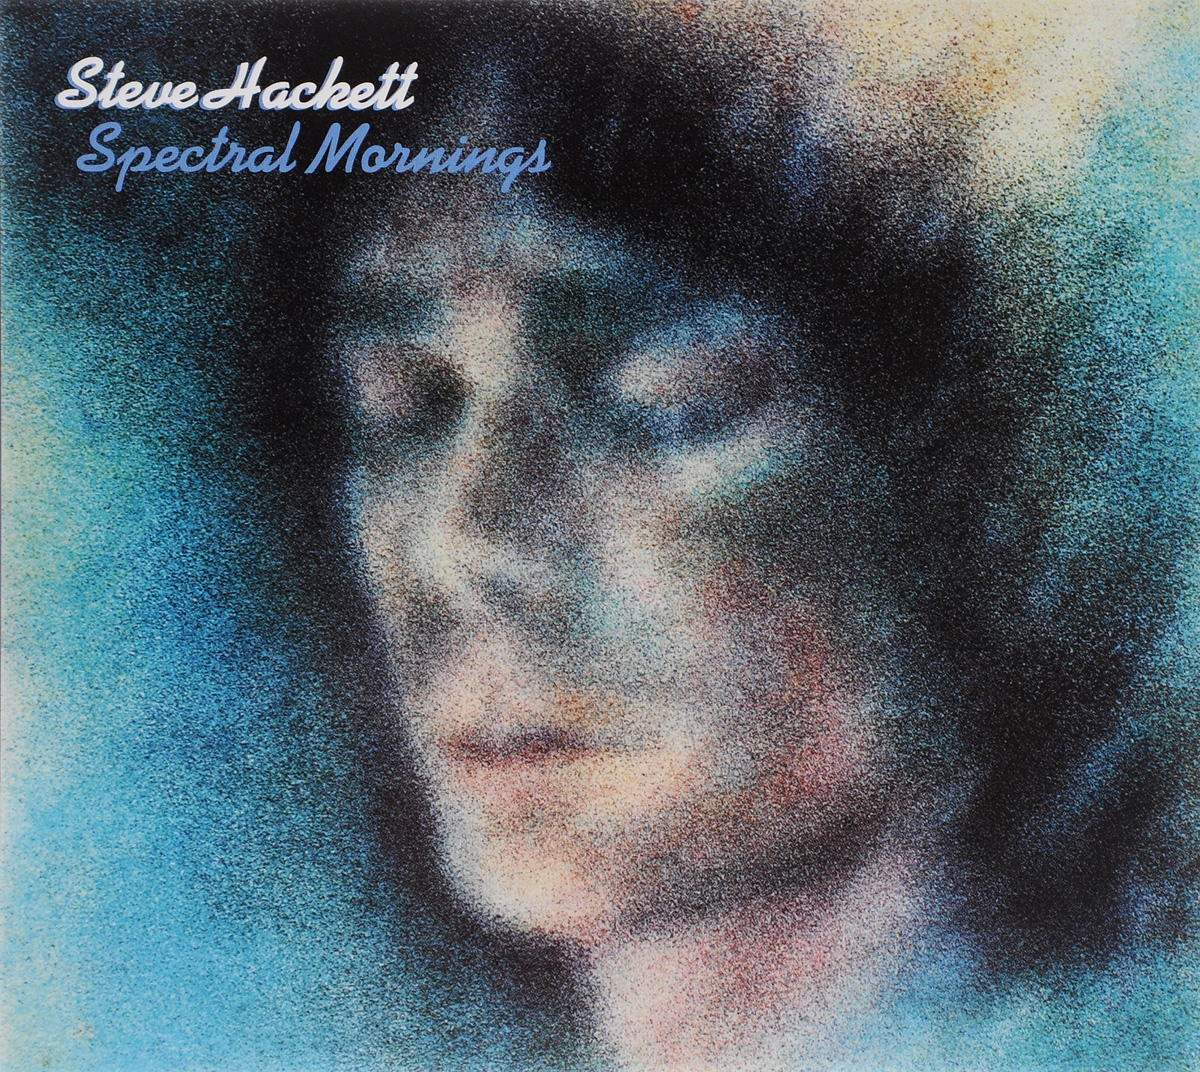 Steve Hackett. Spectral Mornings (3 CD)